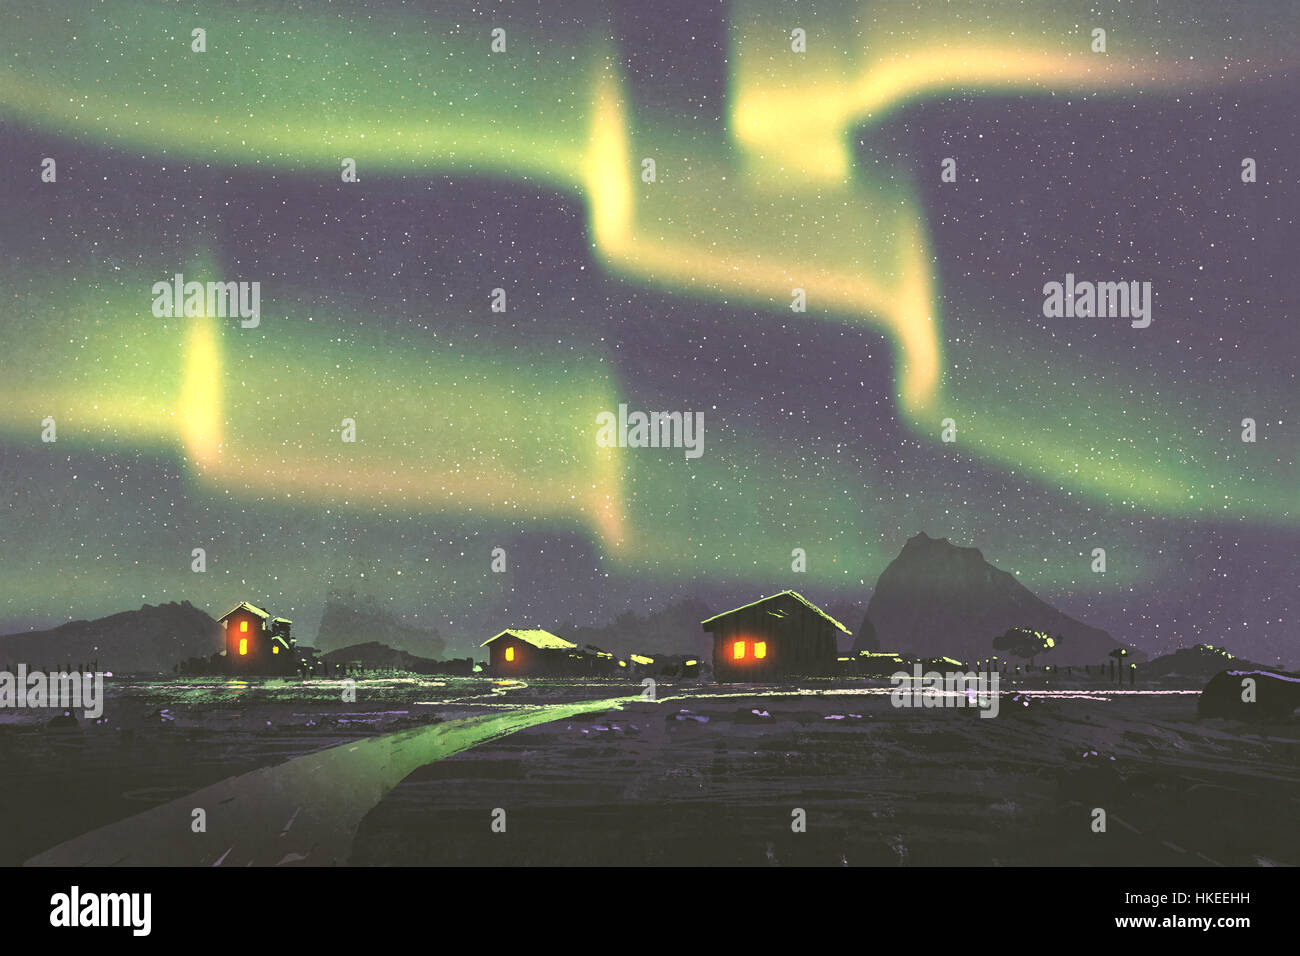 Nachtlandschaft des Dorfes unter Nordlicht Aurora Borealis, Illustration, Malerei Stockfoto